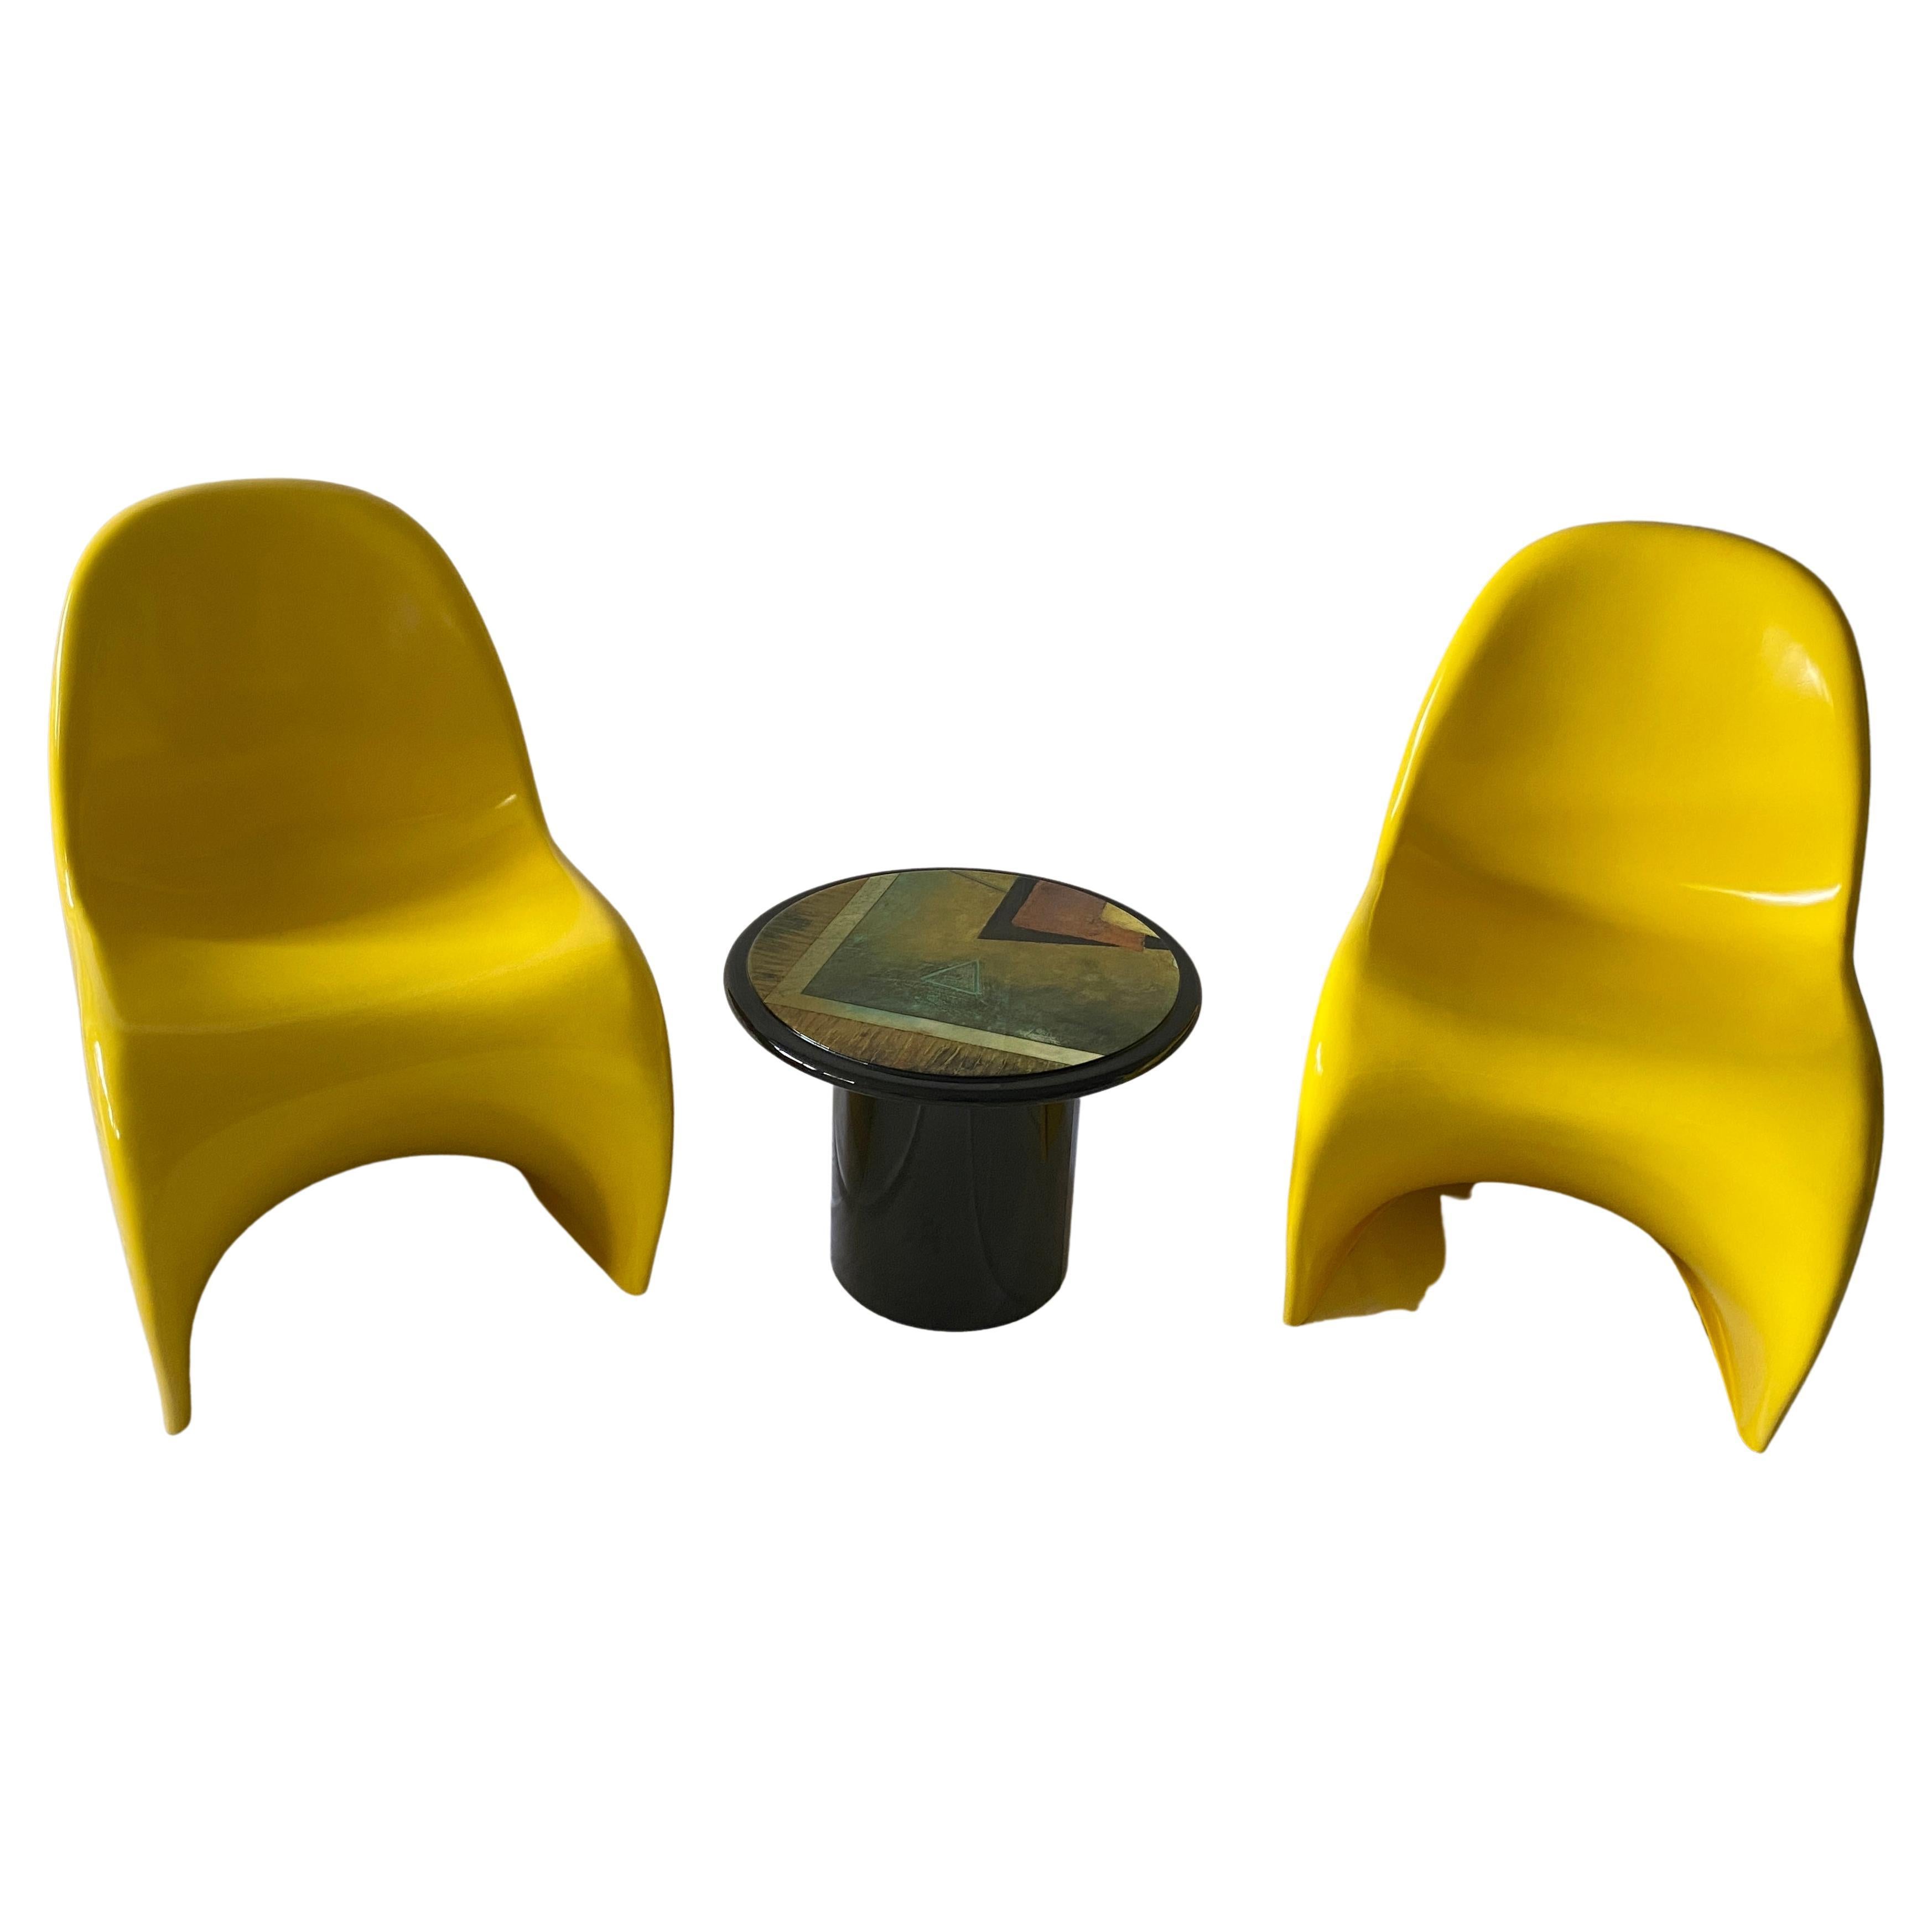 Zeitlose, freitragende Beistellstühle, entworfen von Verner Panton im Jahr 1959. Hochwertiges Design aus Fiberglas. Einzigartiger, retuschierter Zustand. 

Unsere beiden Panton-Freischwinger sind in einem atemberaubenden Goldgelb, die ursprüngliche